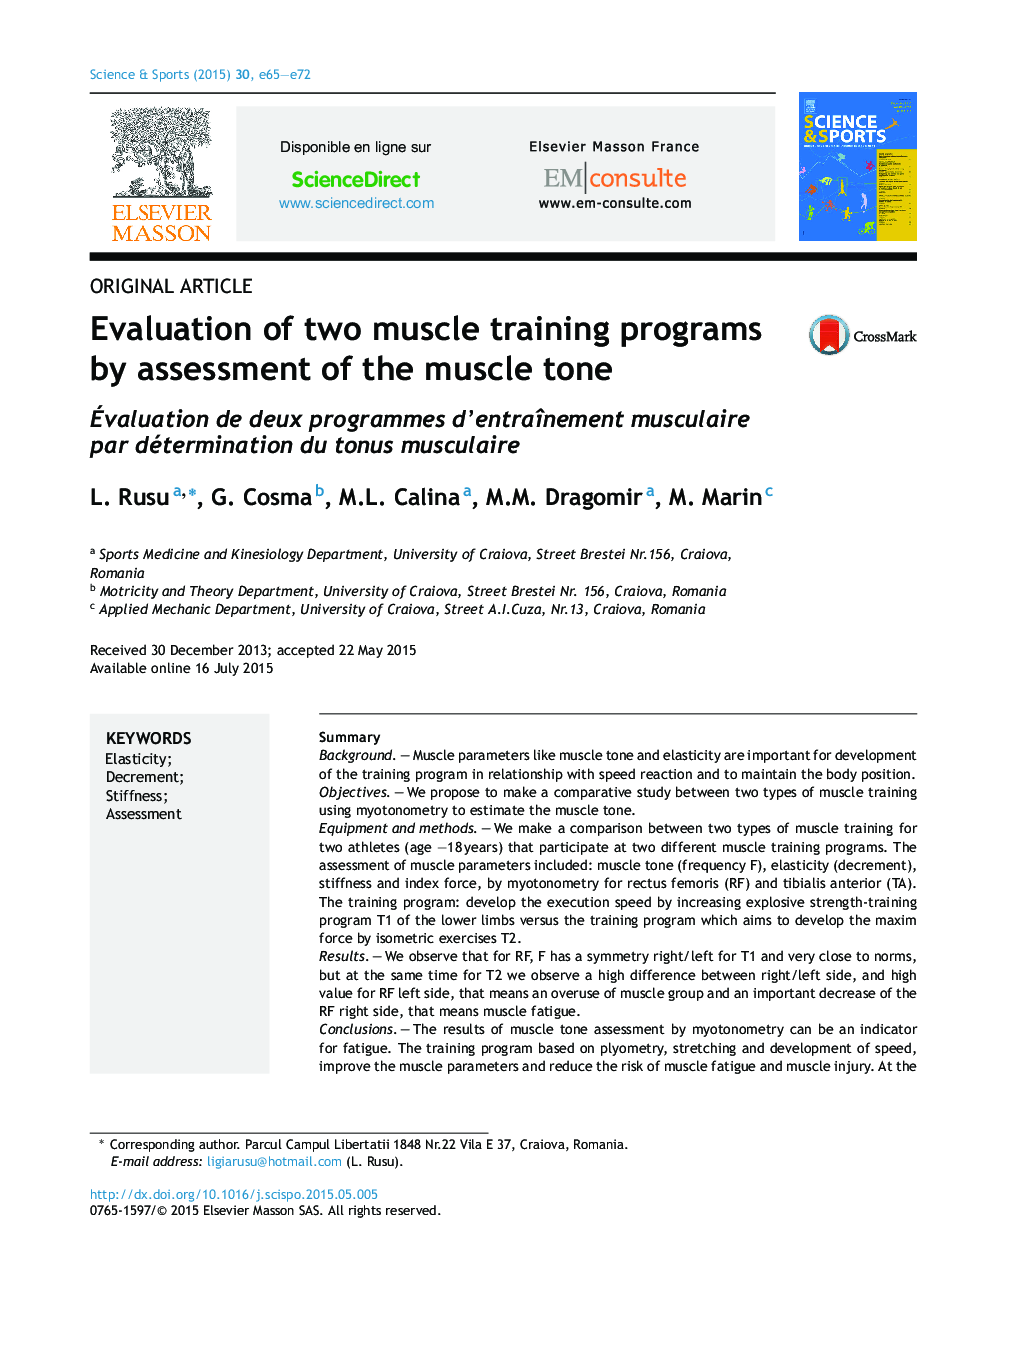 ارزیابی دو برنامه آموزش عضلانی با ارزیابی تن عضله 